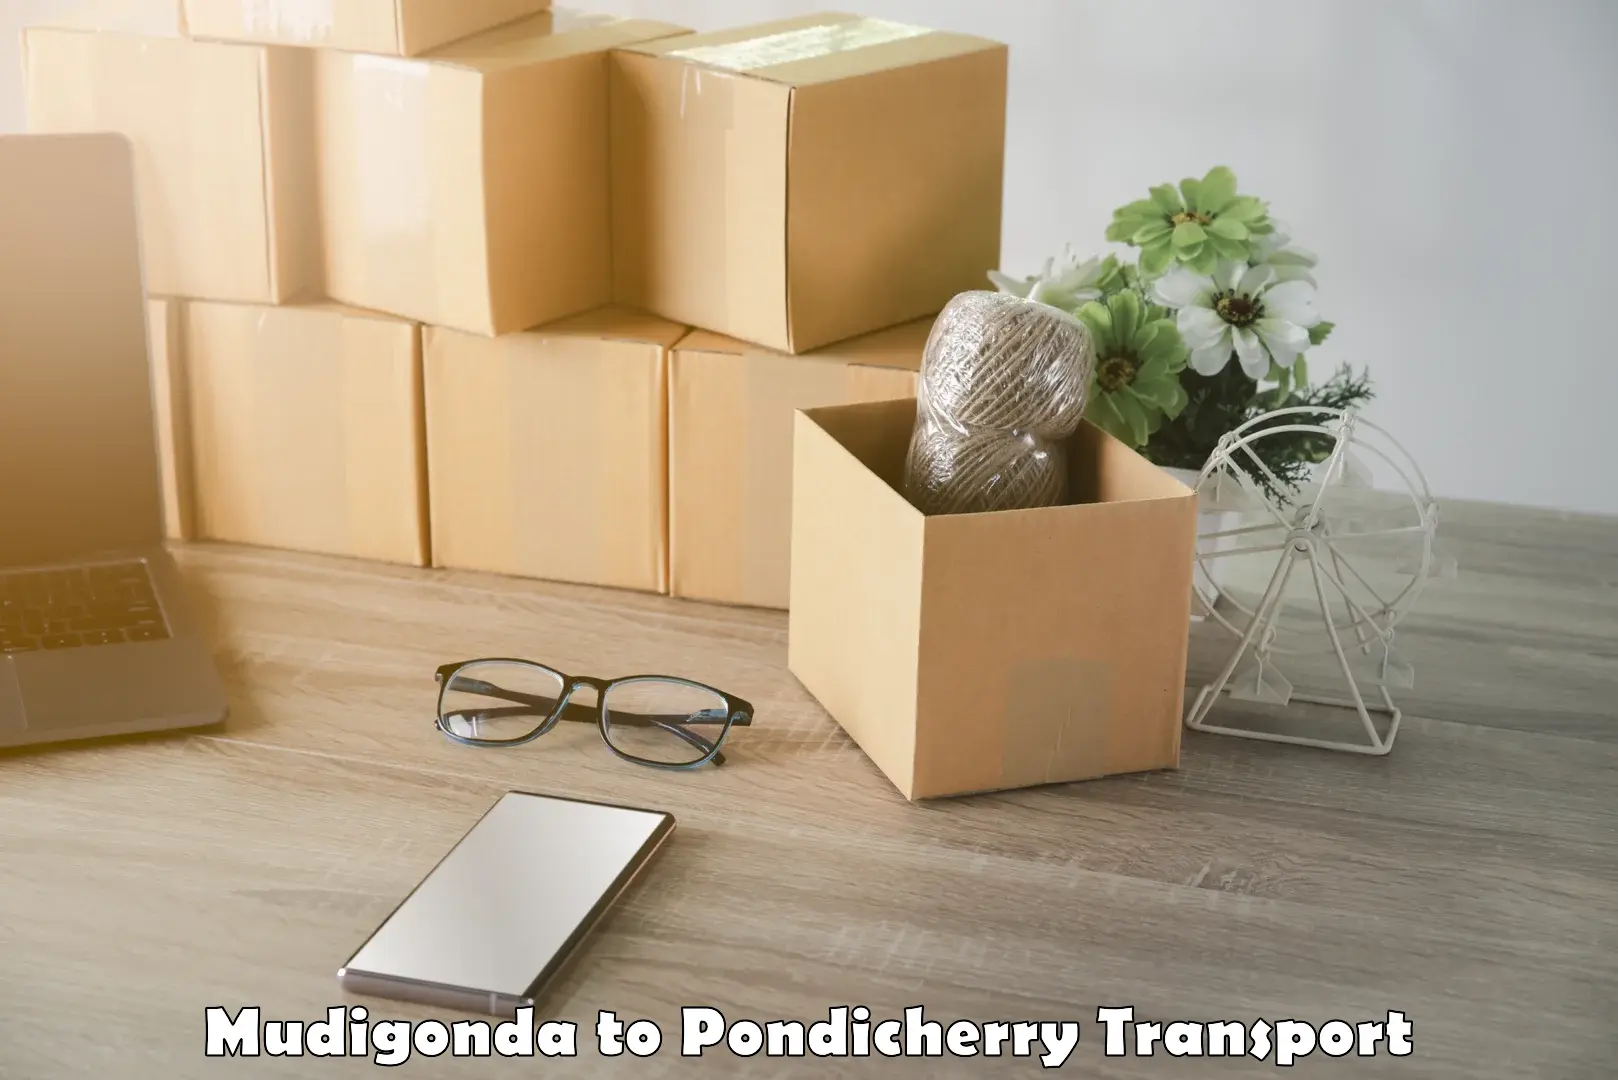 Daily parcel service transport Mudigonda to Pondicherry University